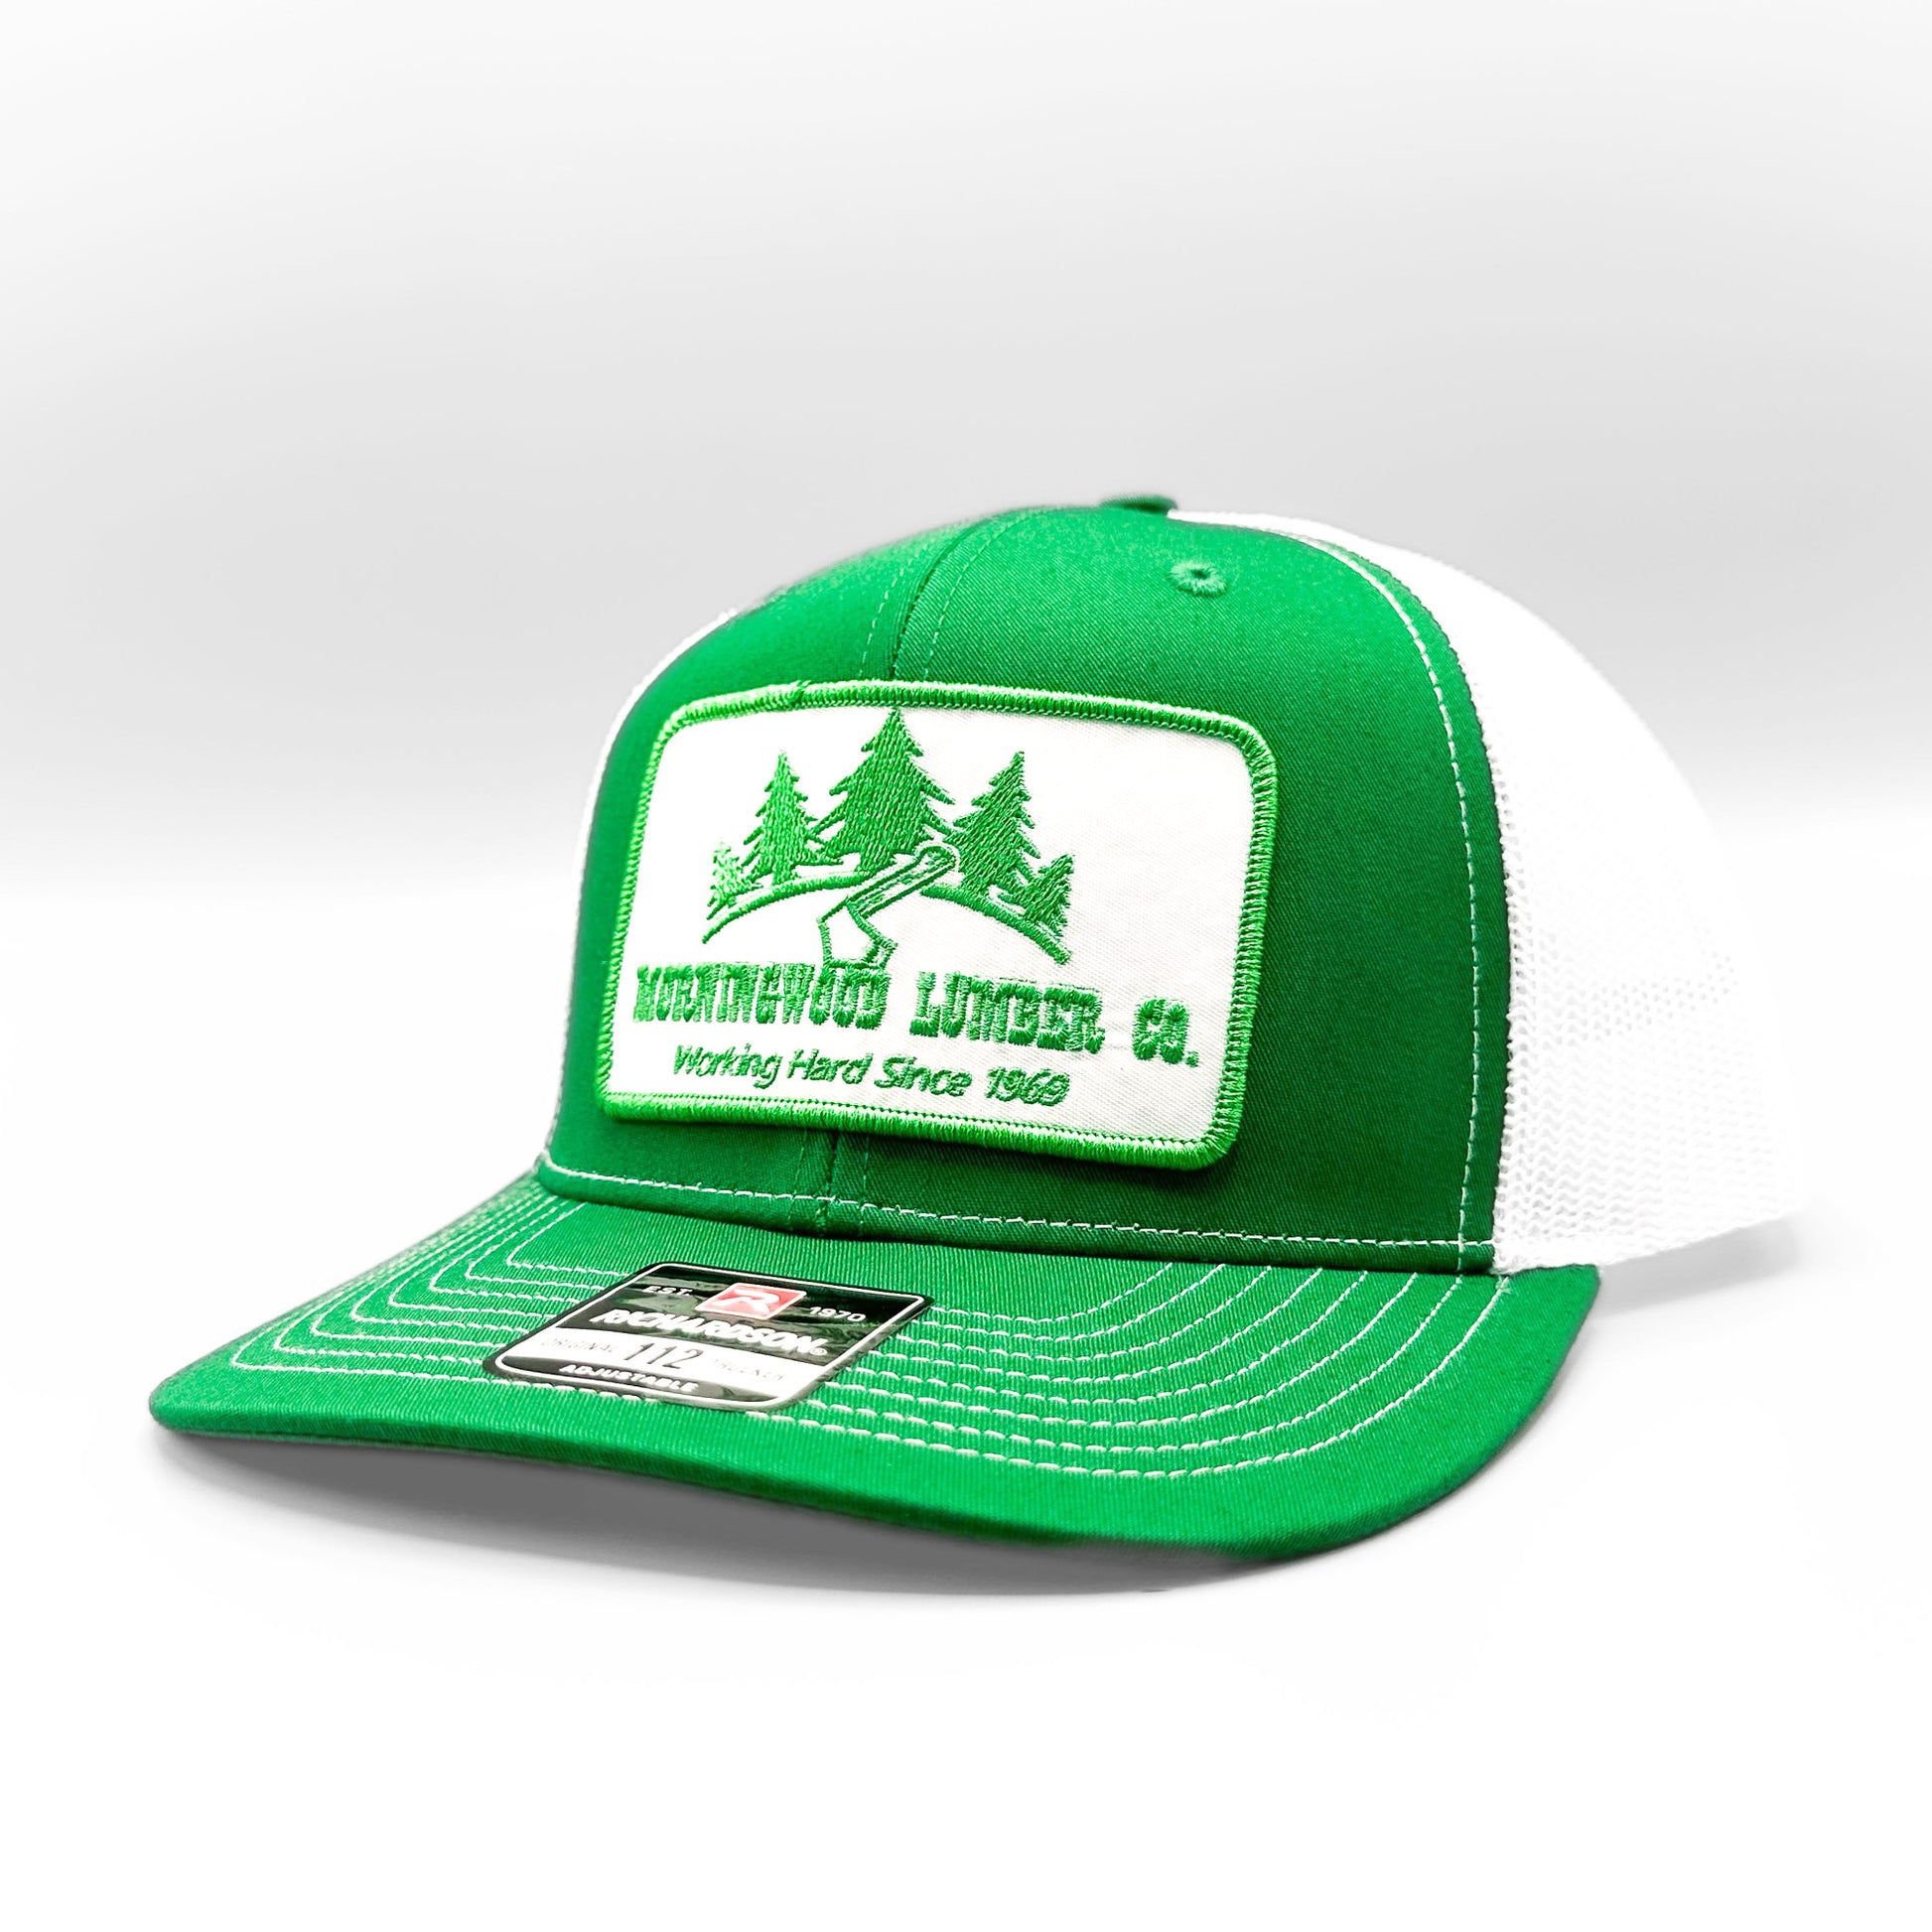 LV Lumber Trucker Hat